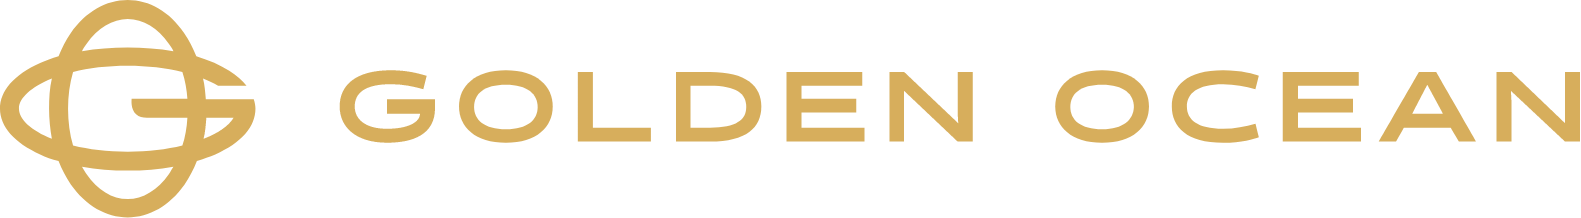 Golden Ocean Group logo large (transparent PNG)